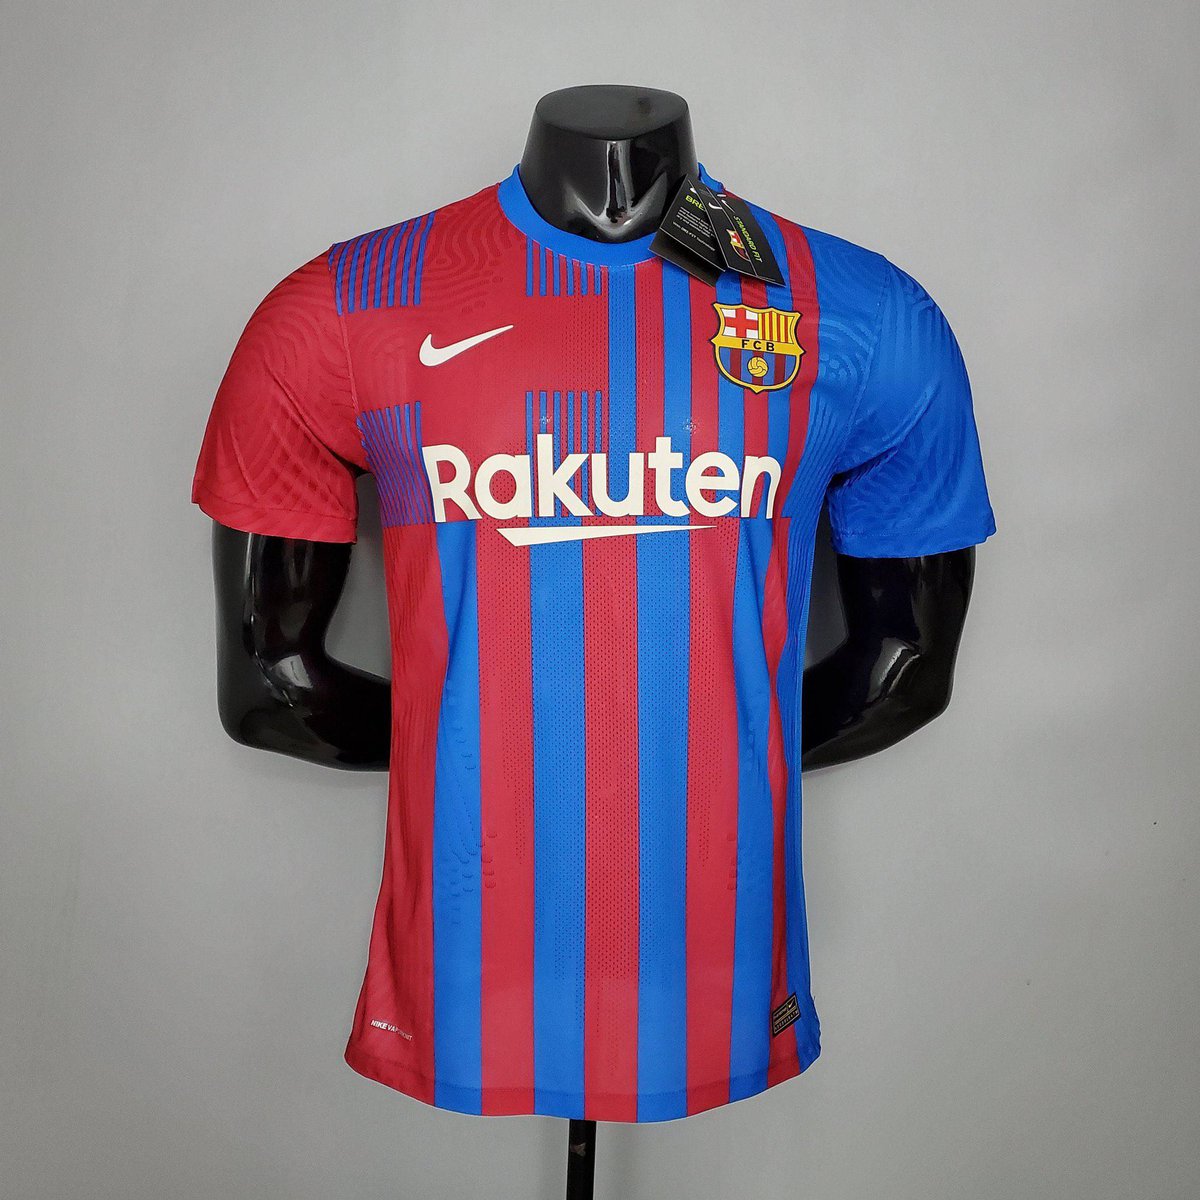 Fc Barcelona Jersey 2021/22 : Nike Fc Barcelona 2021 22 Home Shirt ...